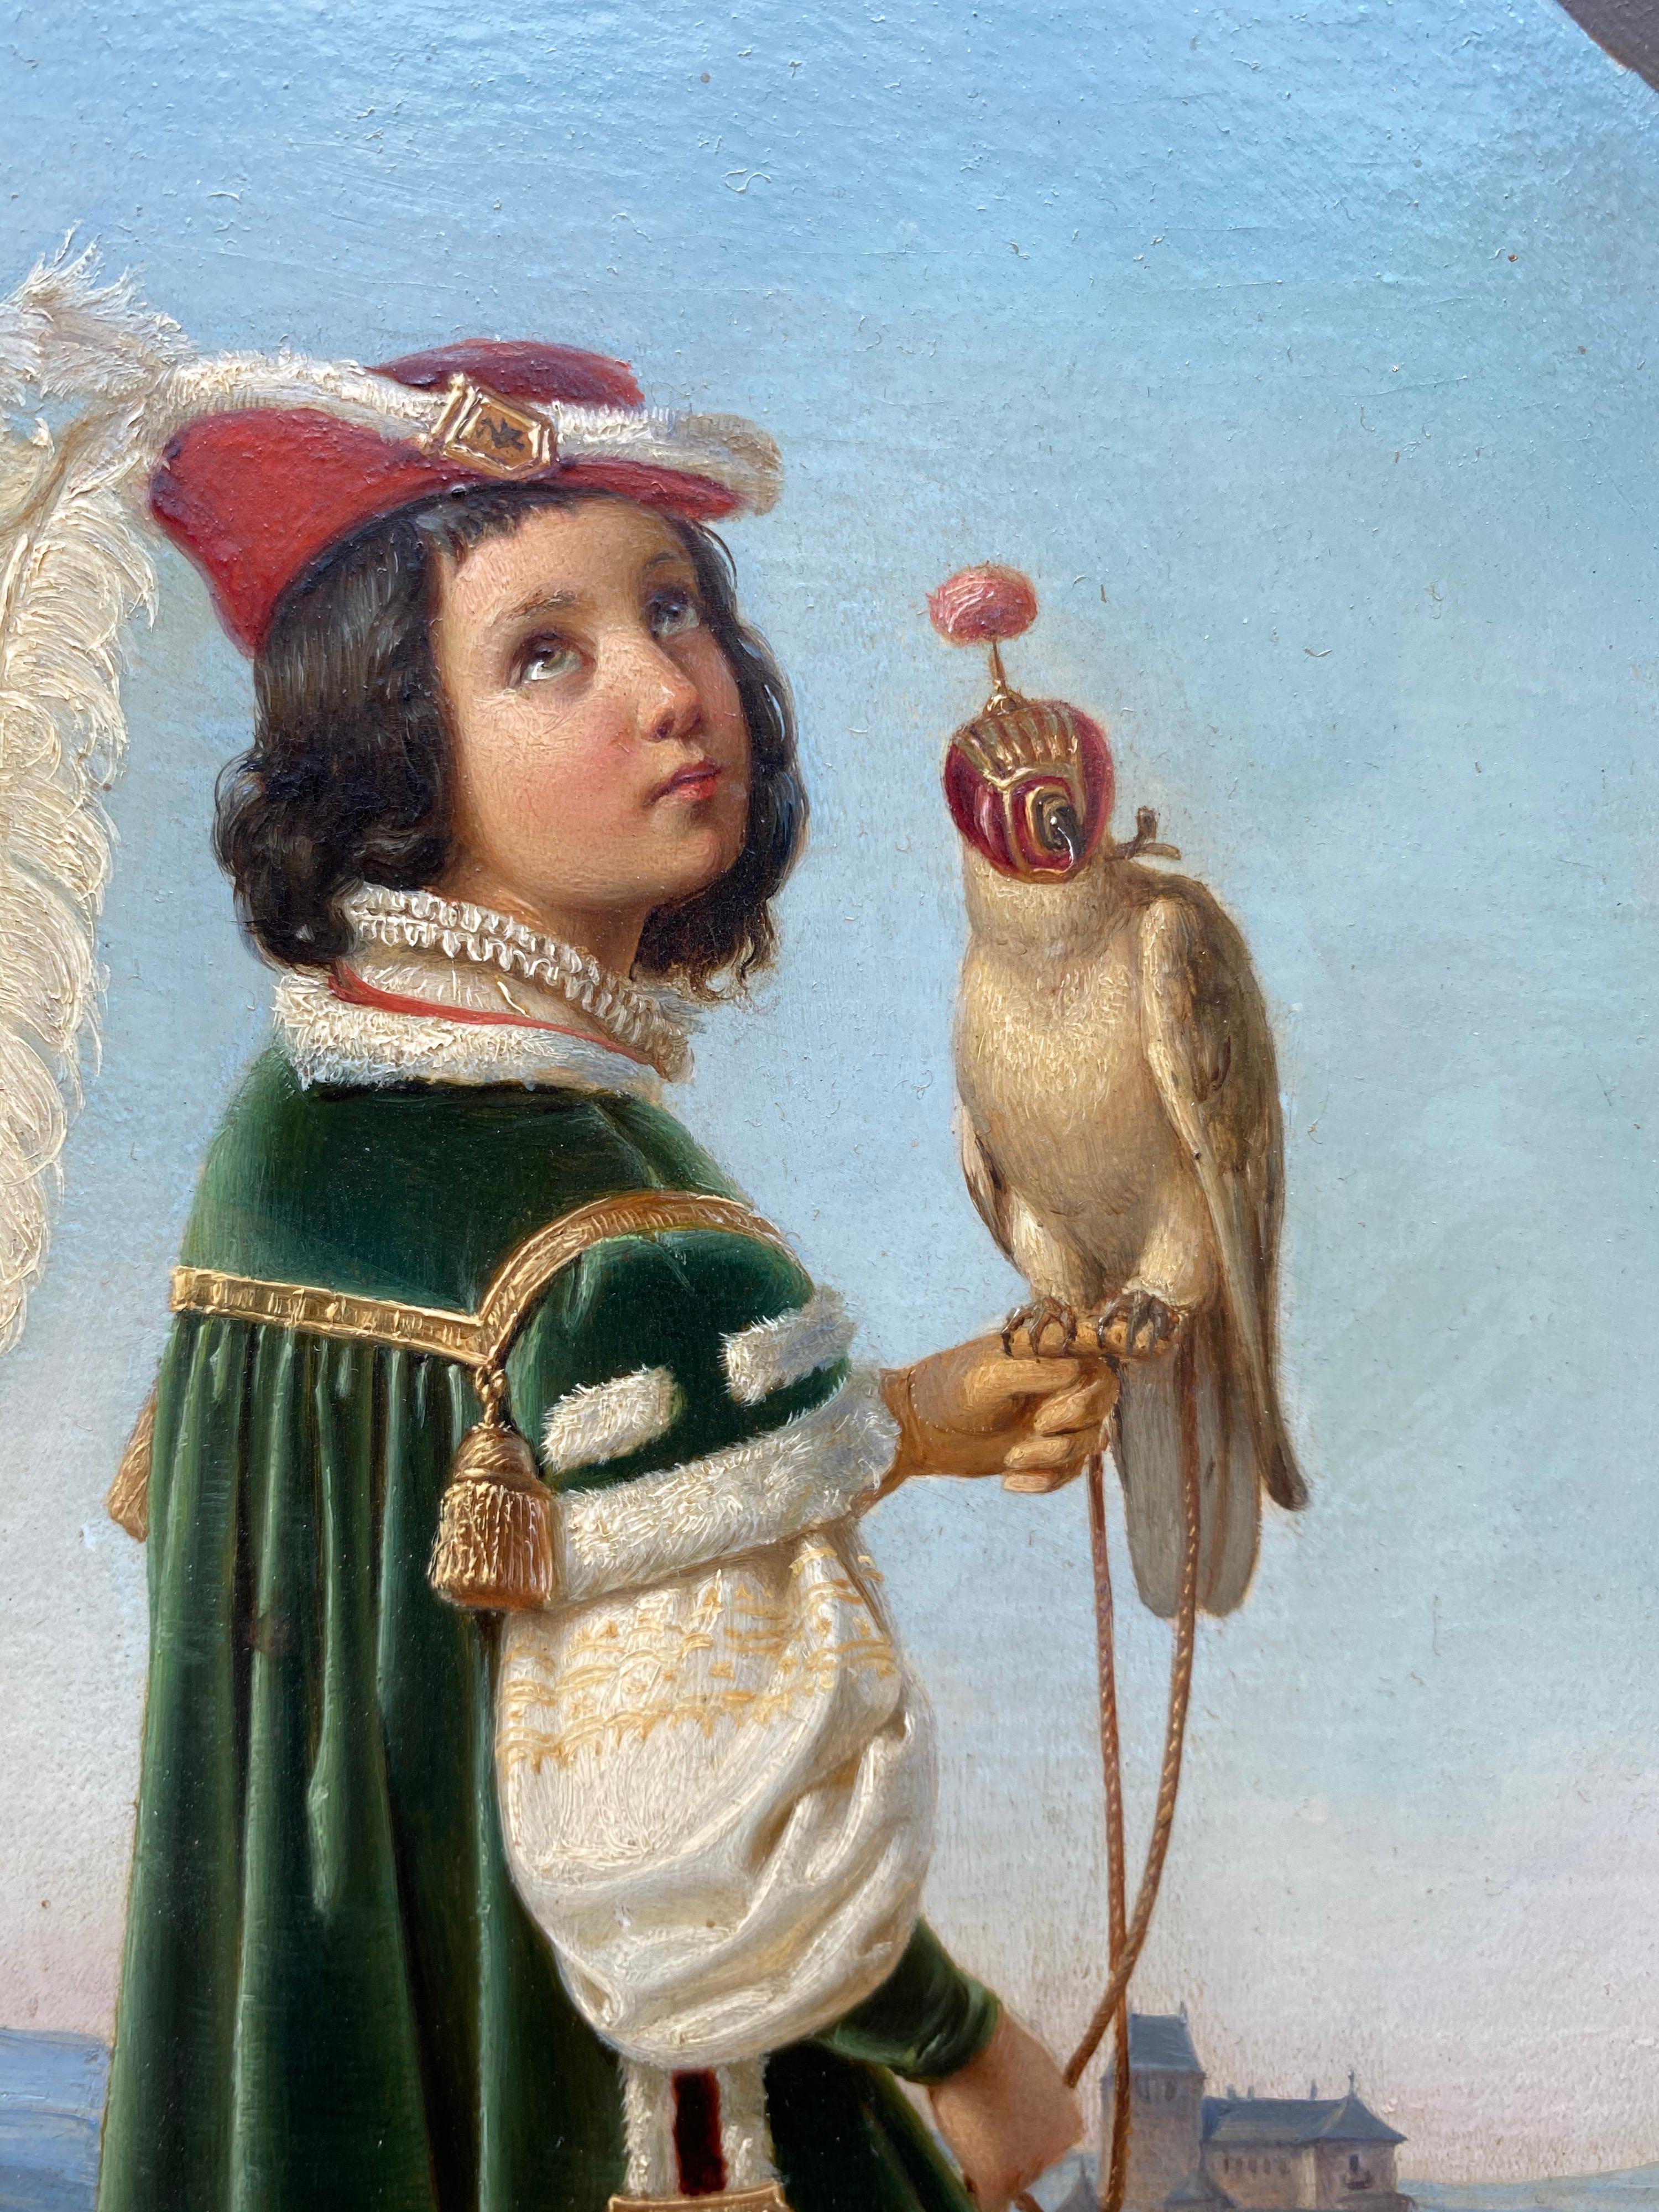 19th century German Nazarene painting - The young prince - Nazarener Von Schadow 3